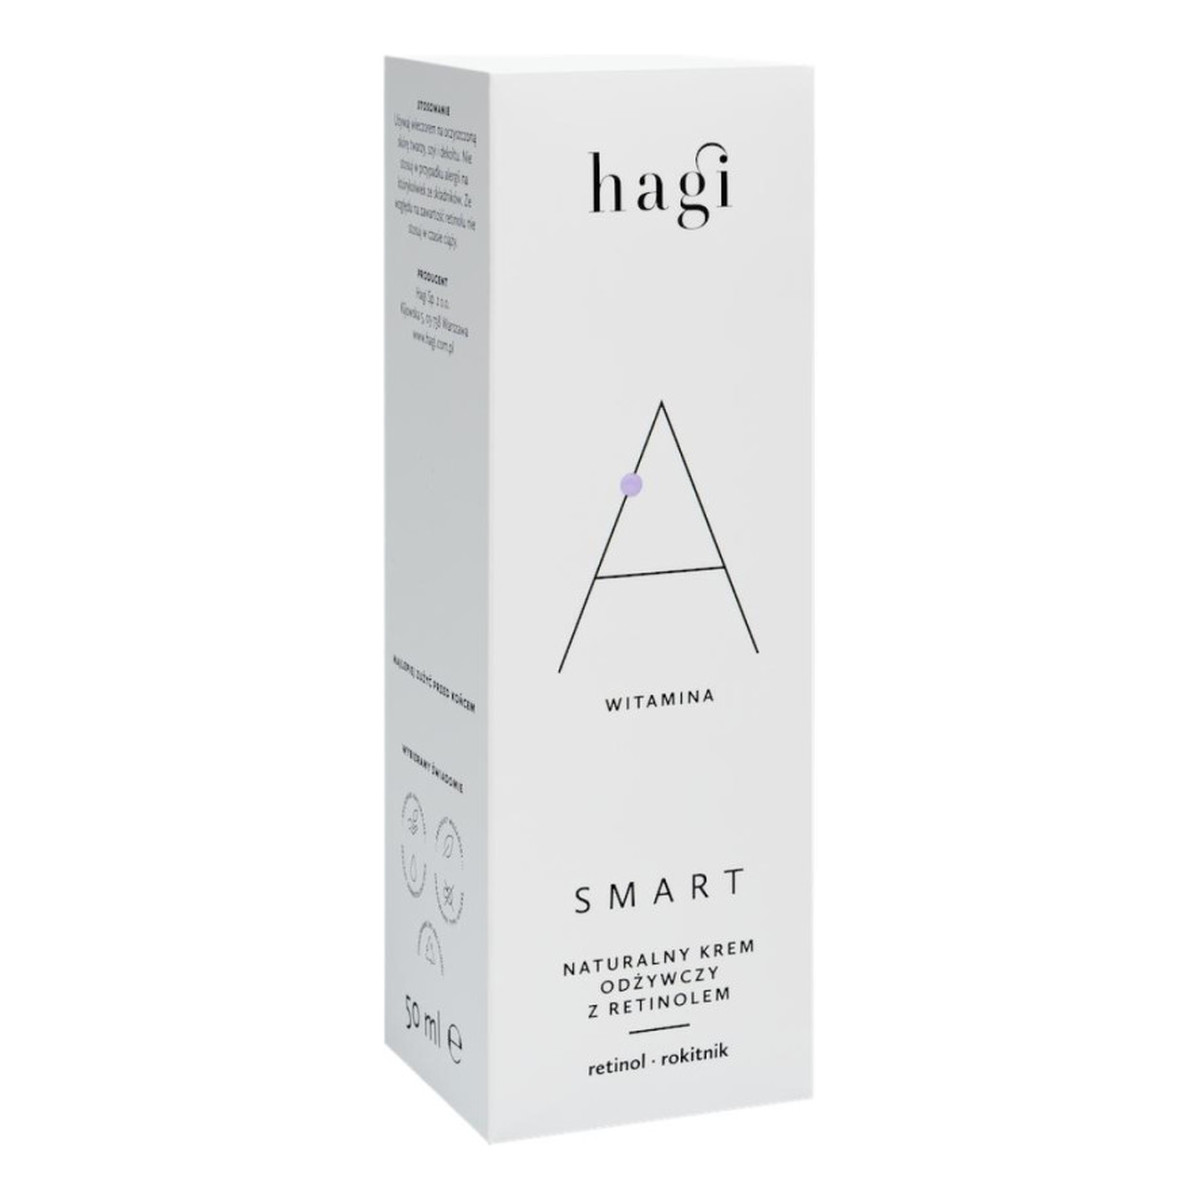 Hagi Smart A Naturalny krem odżywczy z retinolem 0,5% 50ml